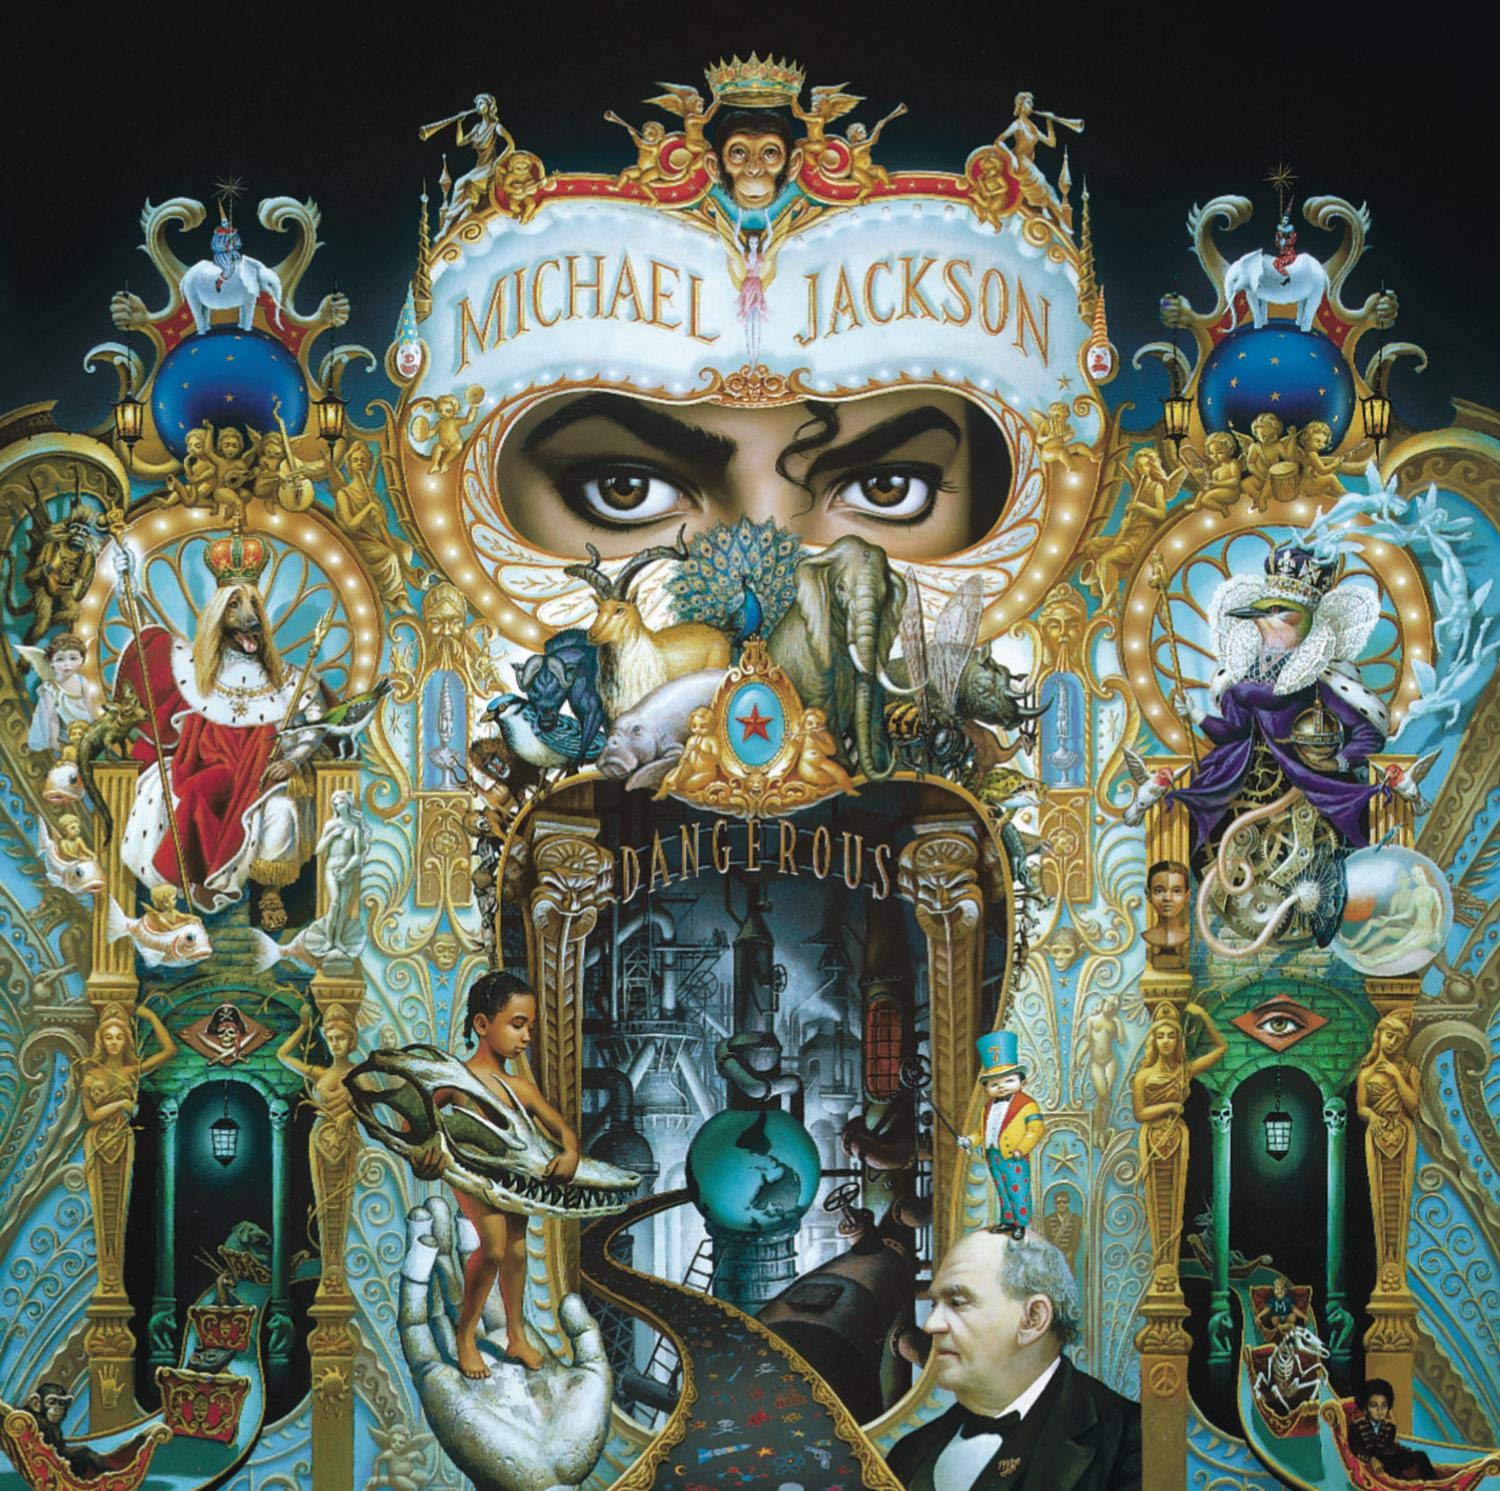 Michael Jackson "Dangerous" Picture 2LP